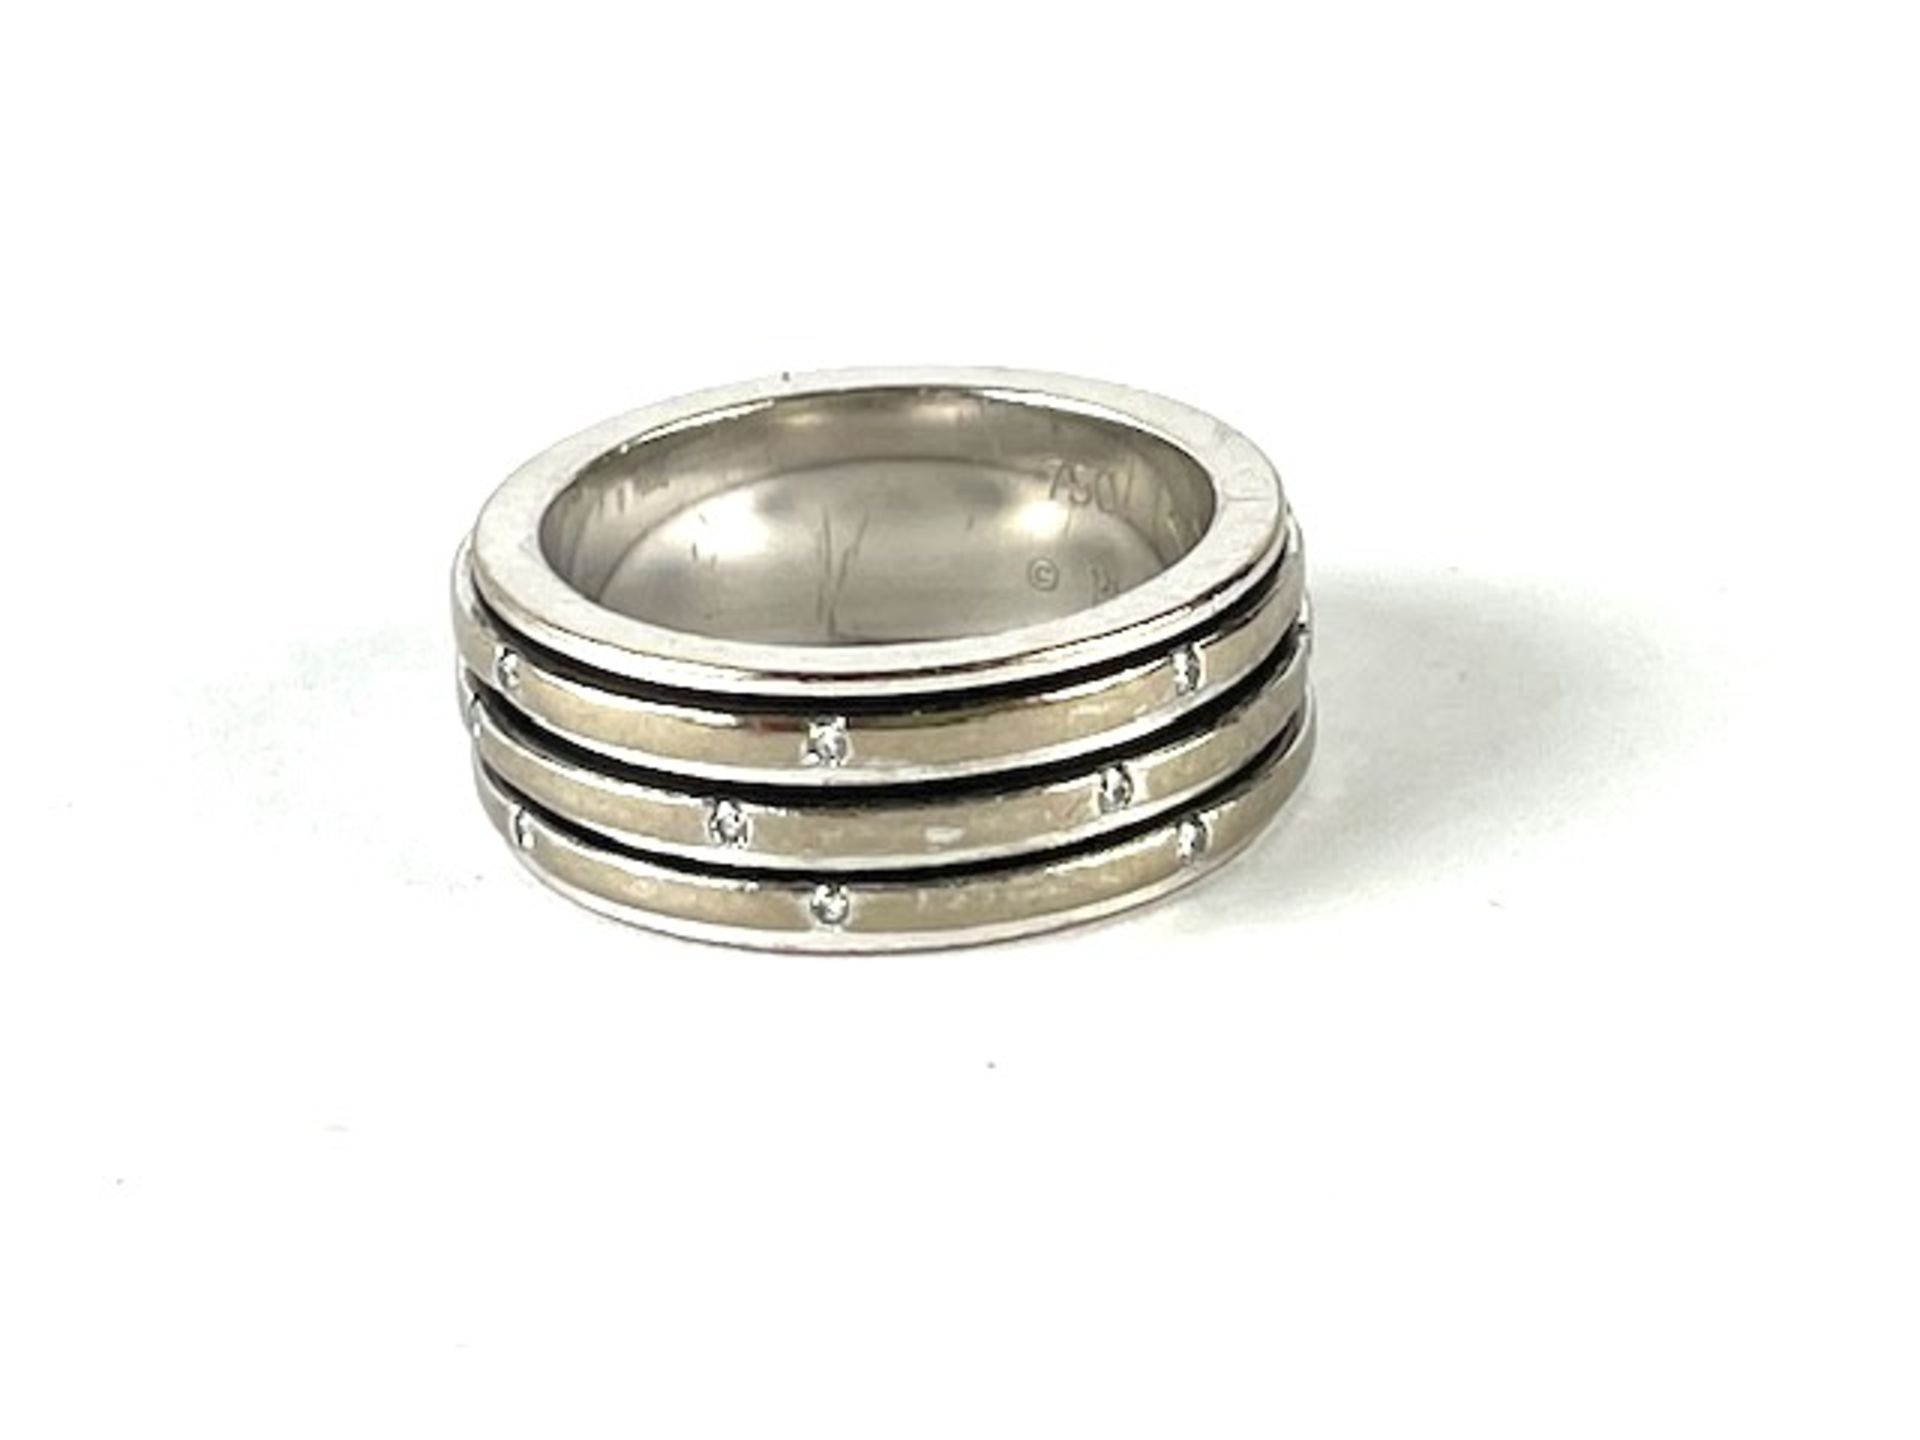 Piaget ring - Image 3 of 4